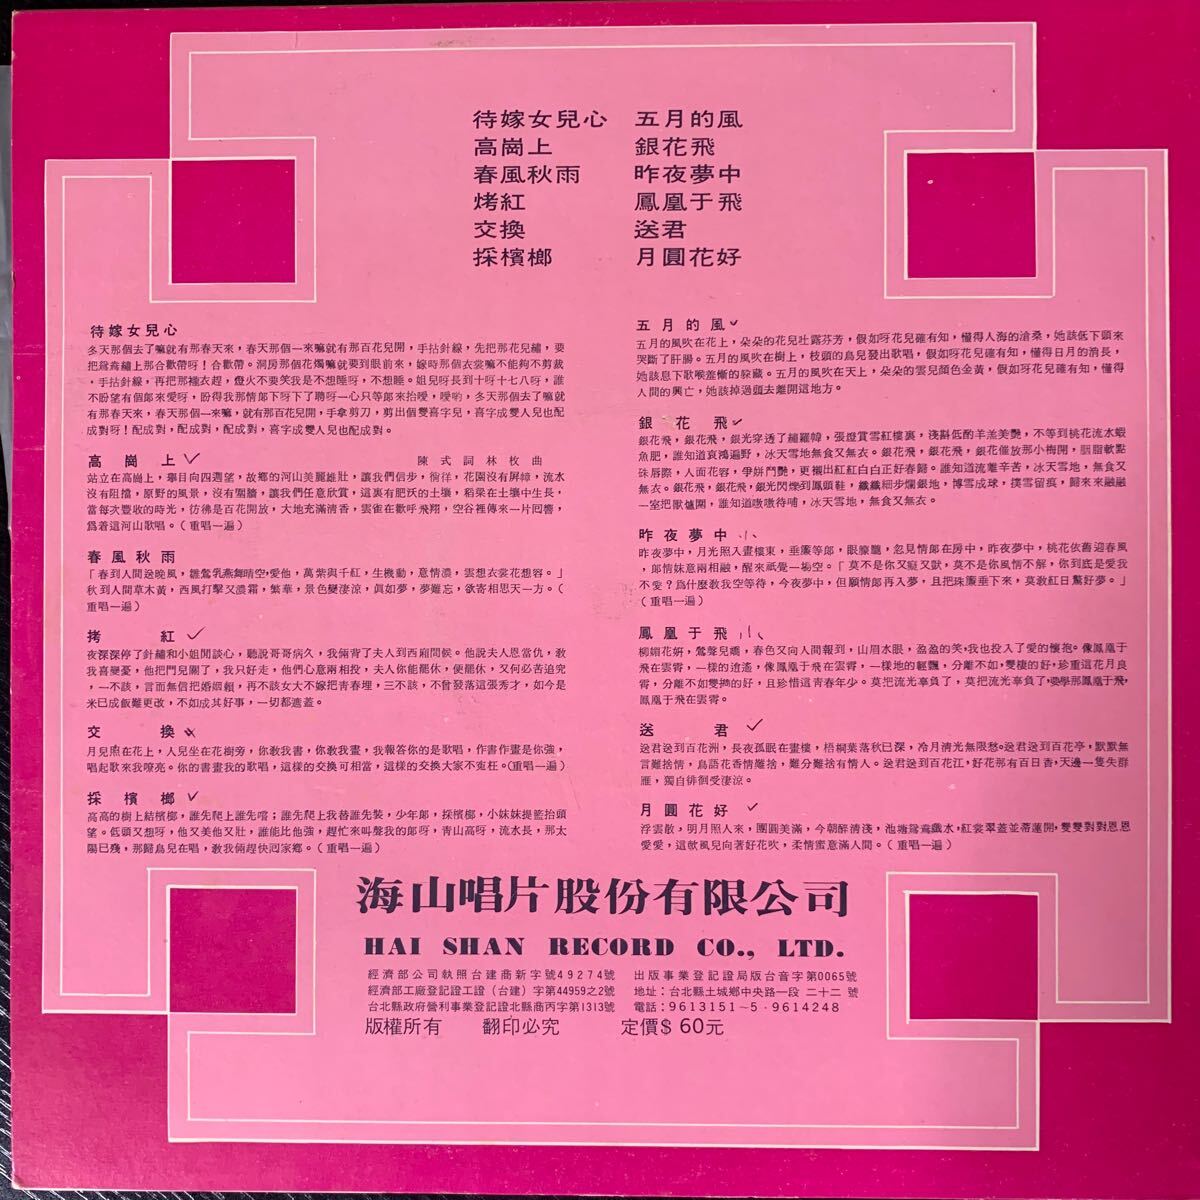 海山唱片 Haishan Records LS4047 レコード Vinyl 台湾盤 Taiwan 台灣_画像2